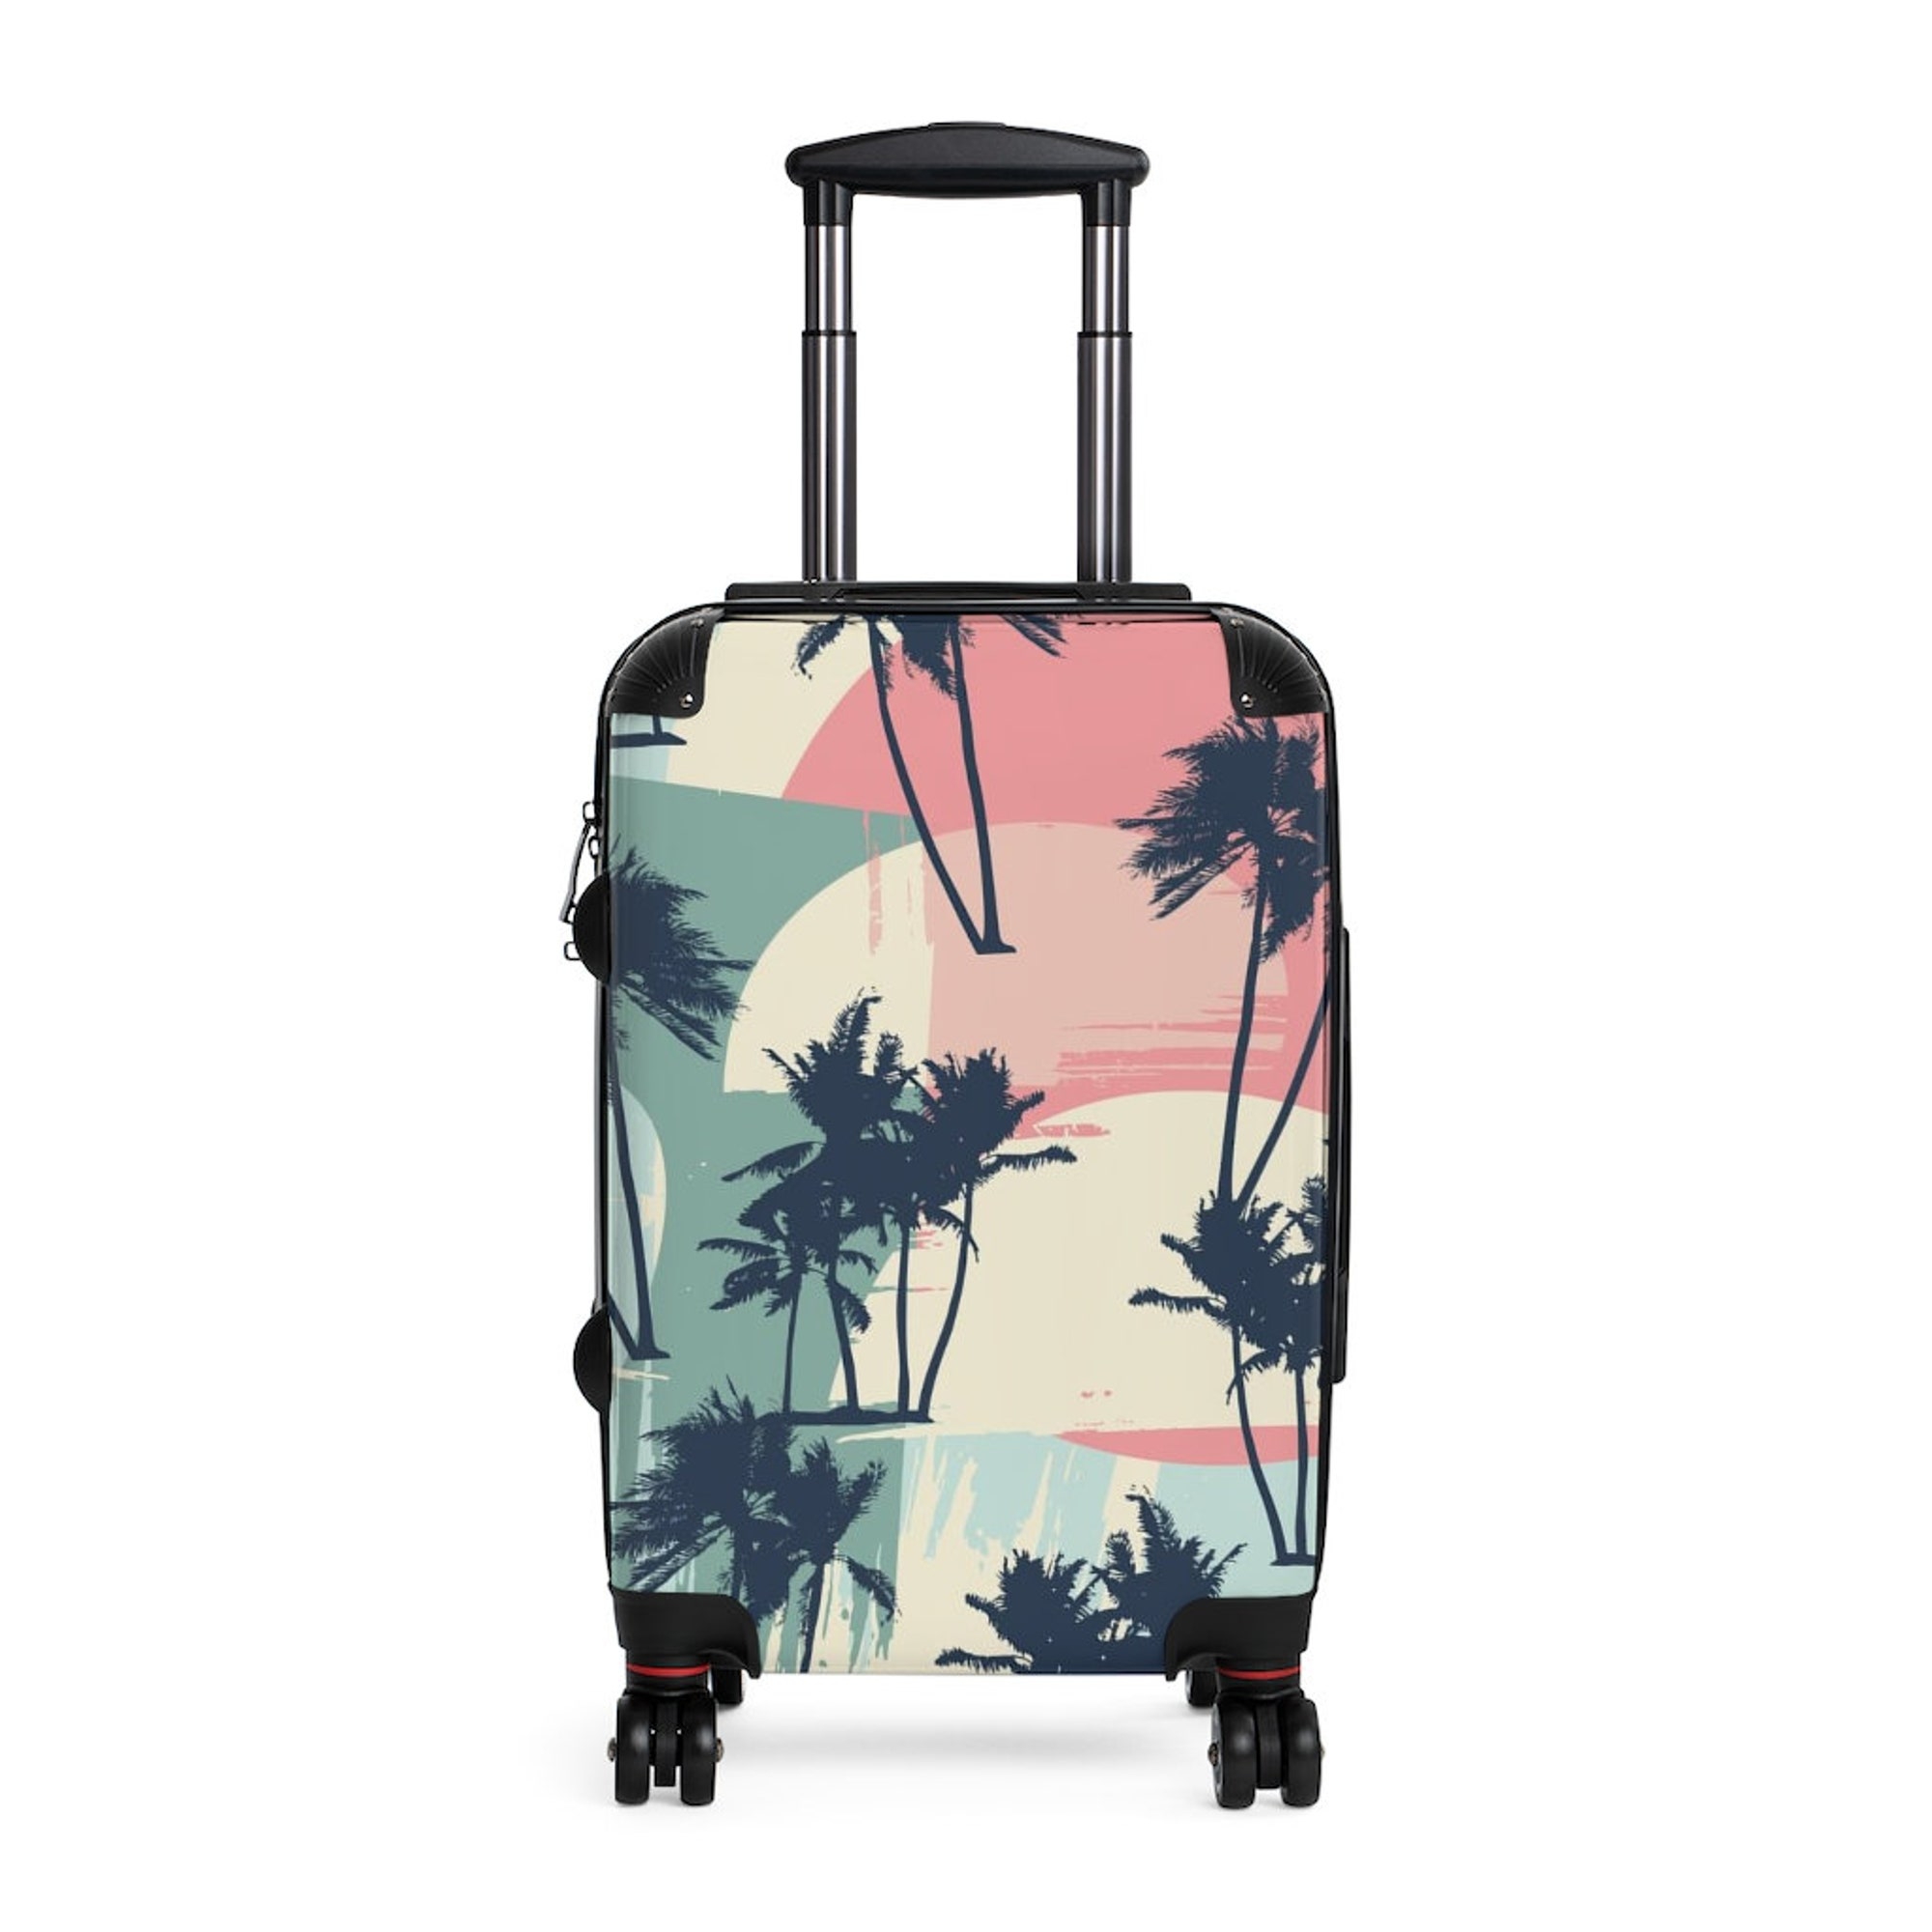 The Aruba Suitcase